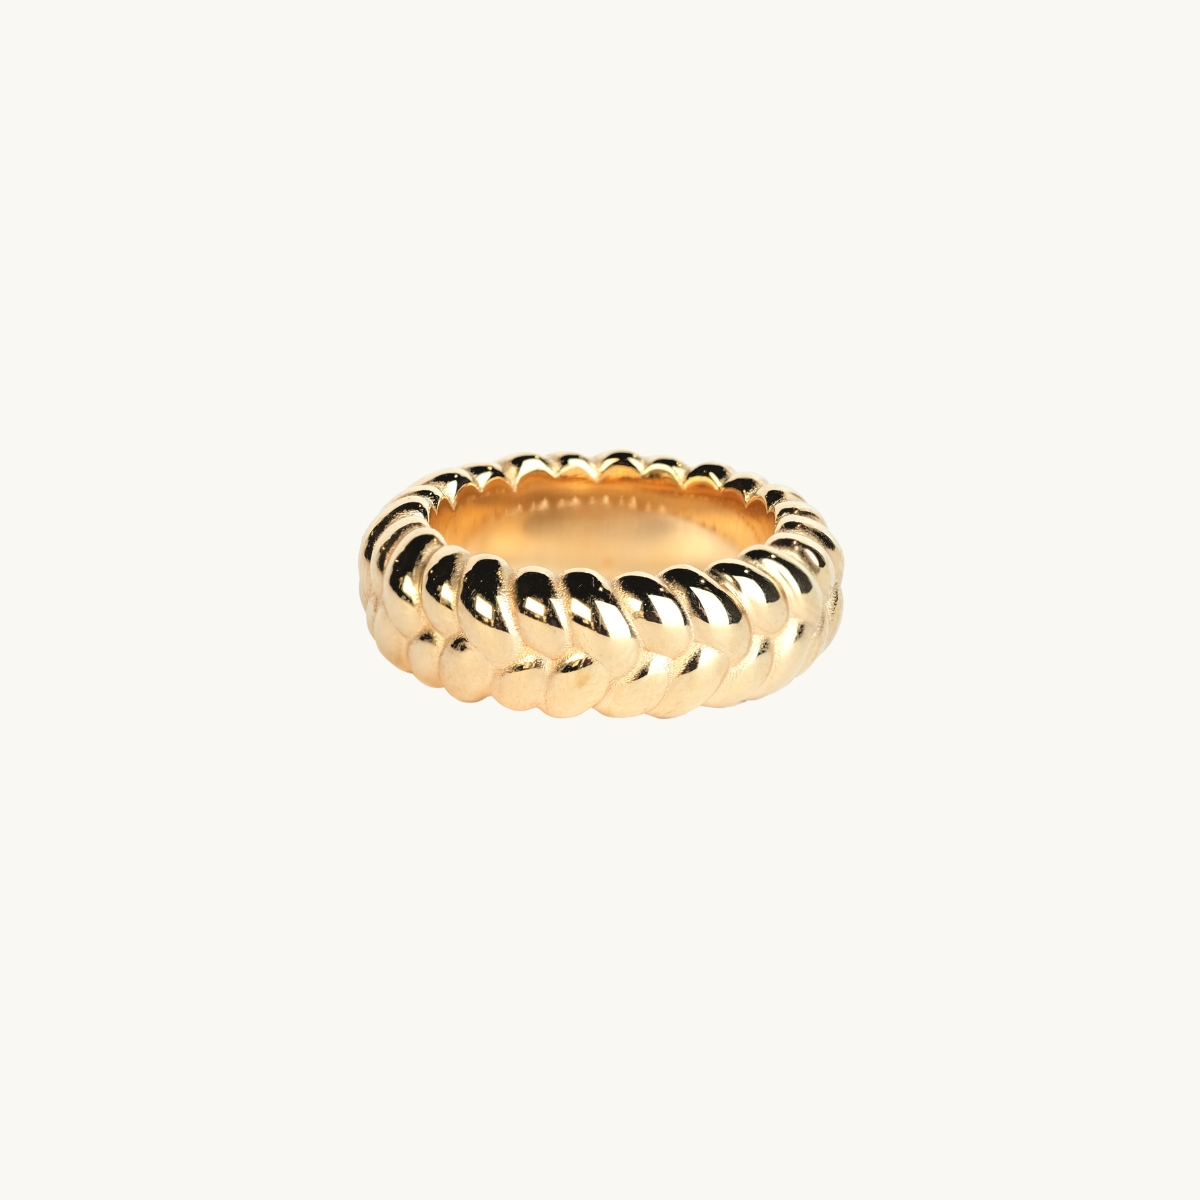 en ring i 18k guldfrgylld mssing med fltat mnster